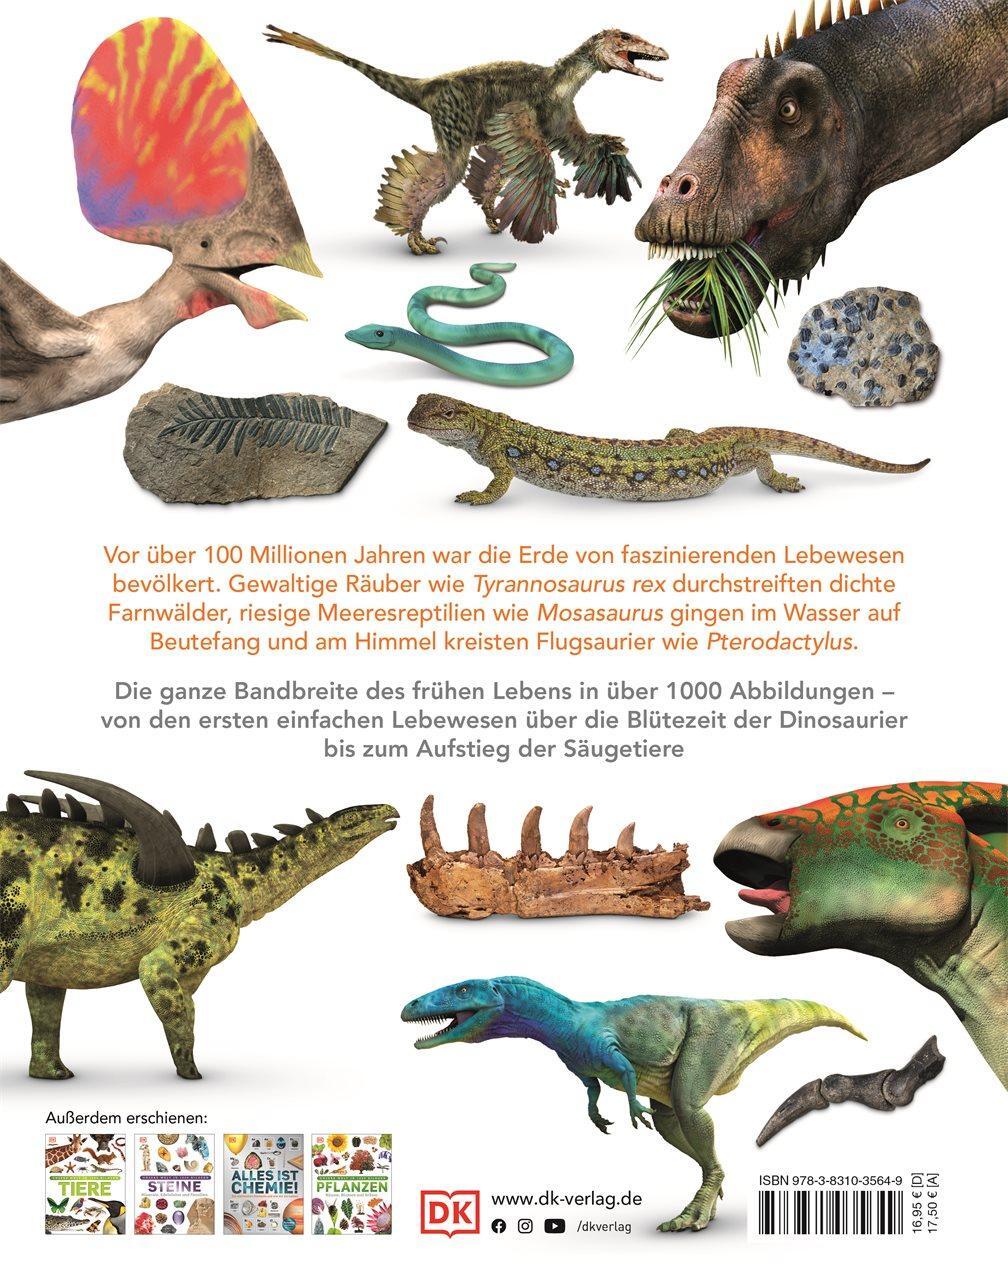 Rückseite: 9783831035649 | Dinosaurier | Lebewesen und Fossilien der Urzeit in über 1000 Bildern